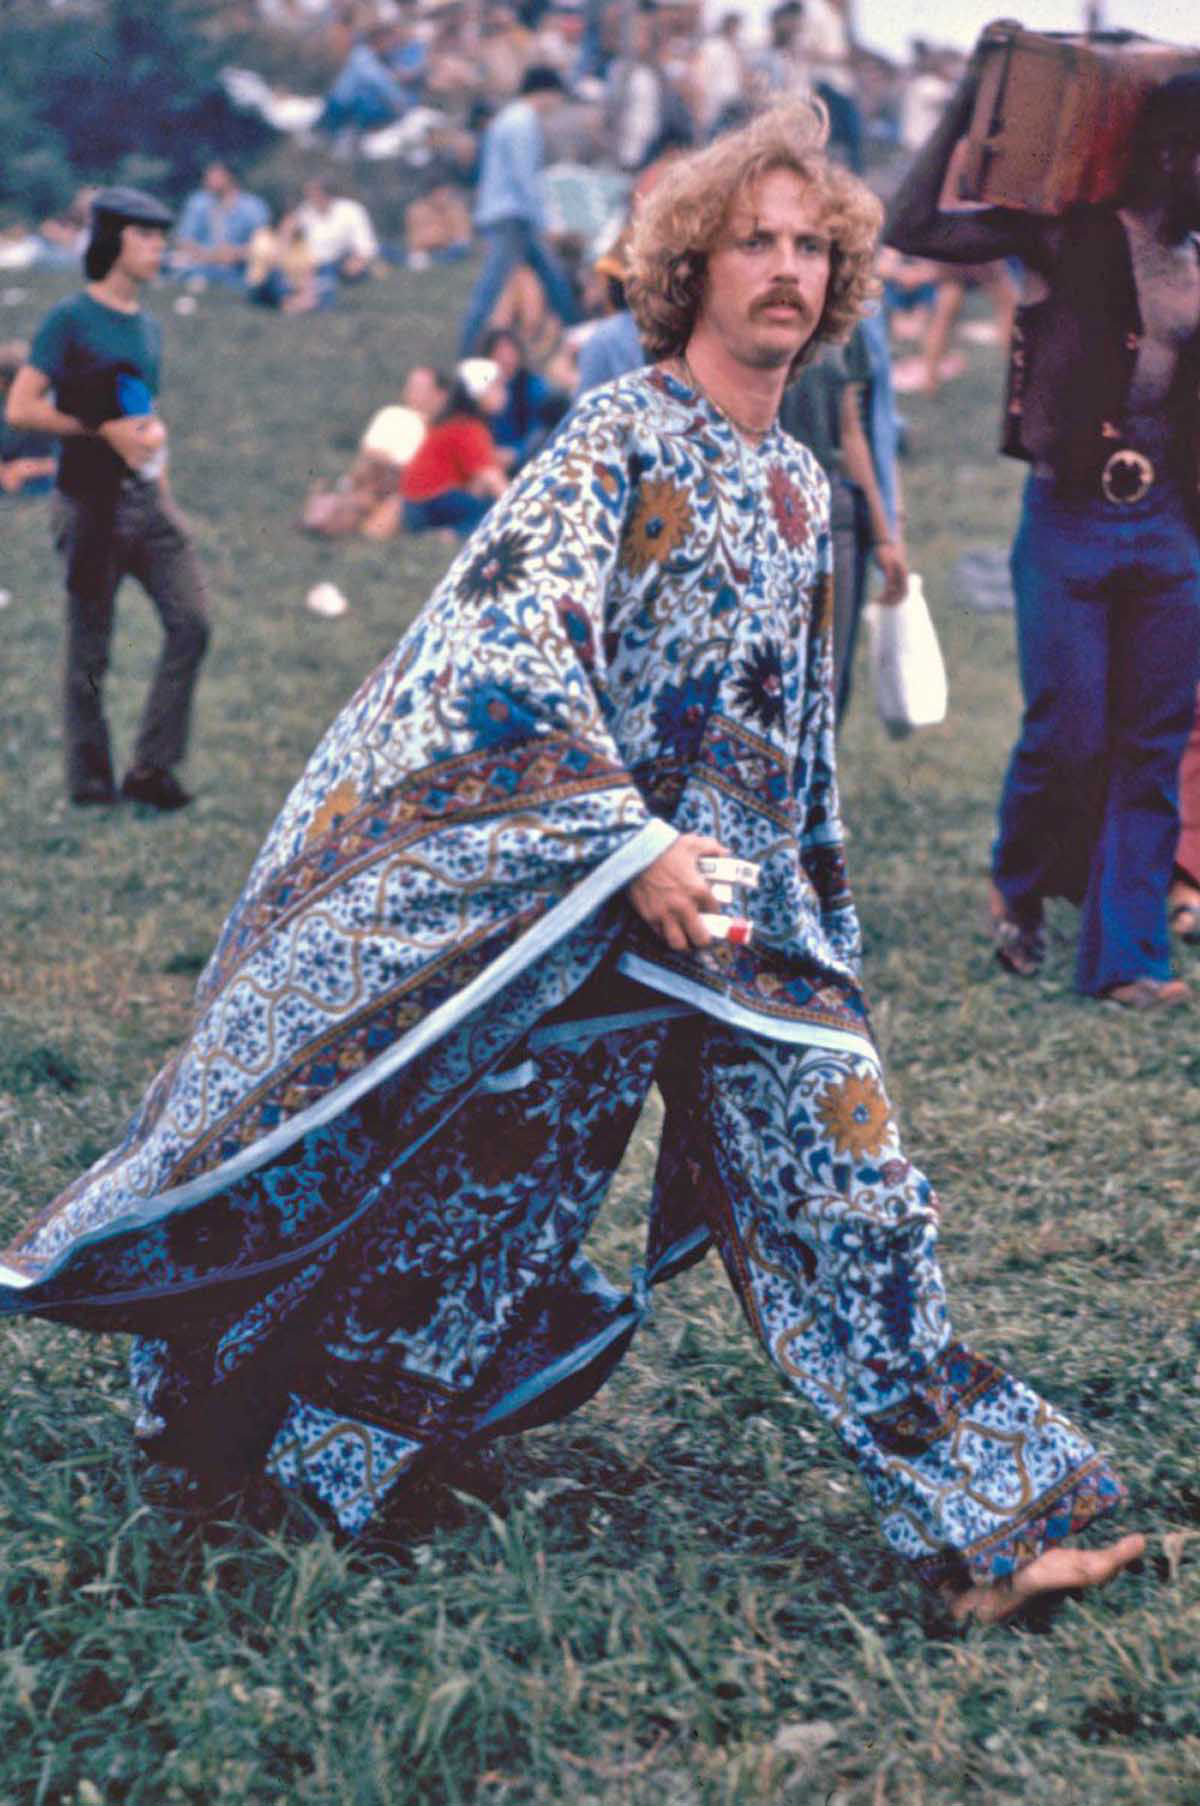 Fotos impressionantes retratam a moda rebelde de Woodstock em 1969 02